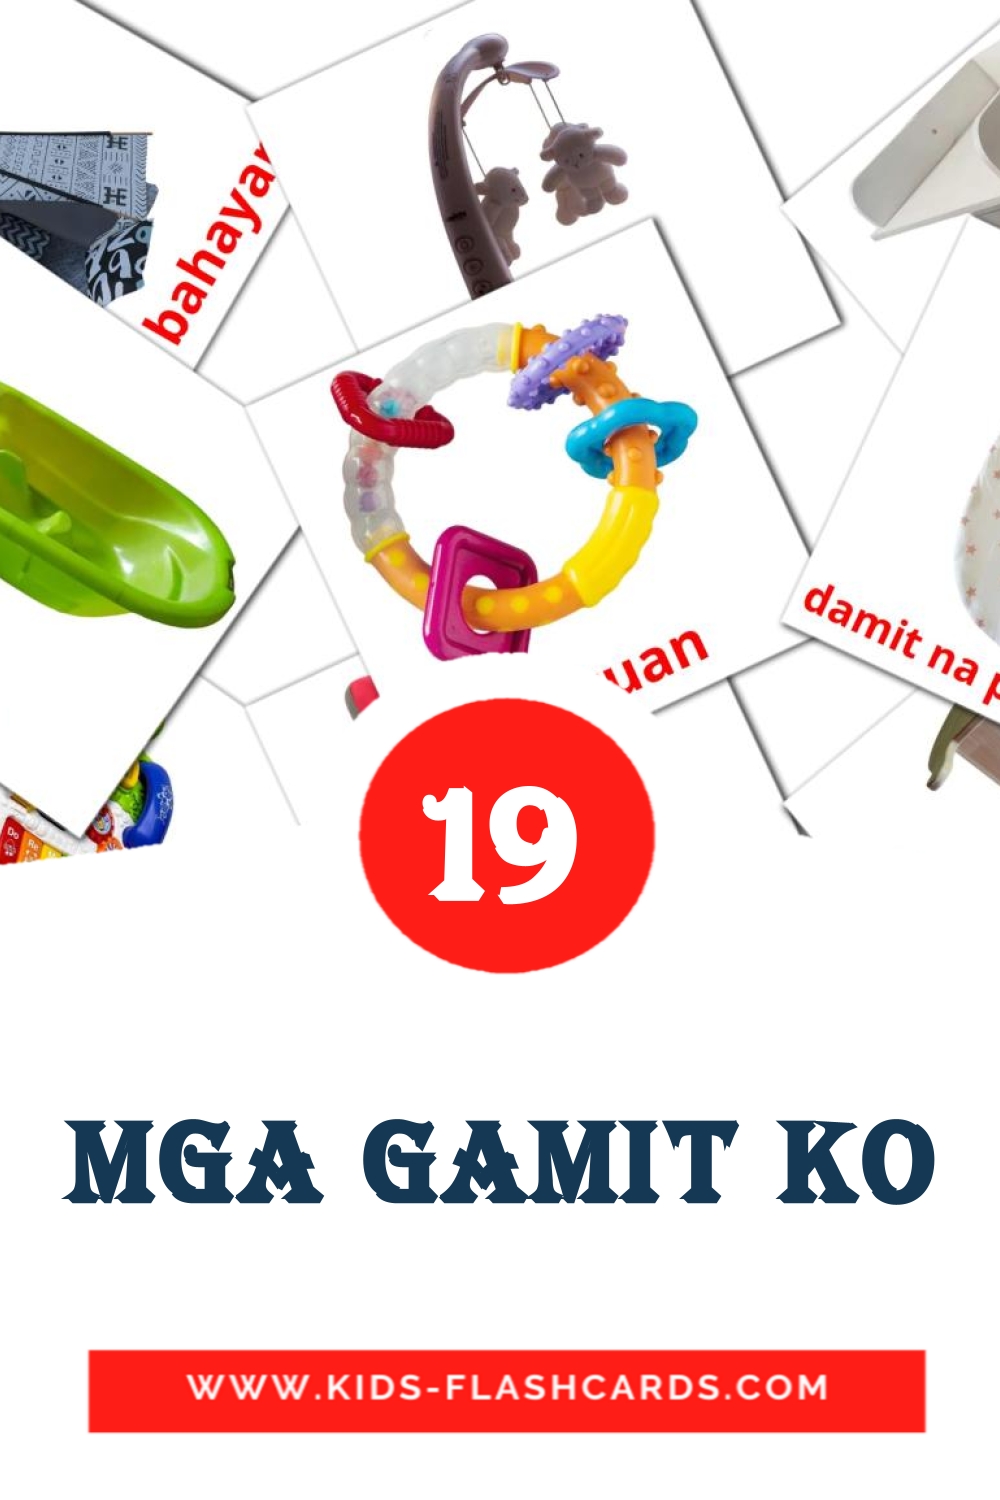 19 Mga gamit ko Bildkarten für den Kindergarten auf Filipino